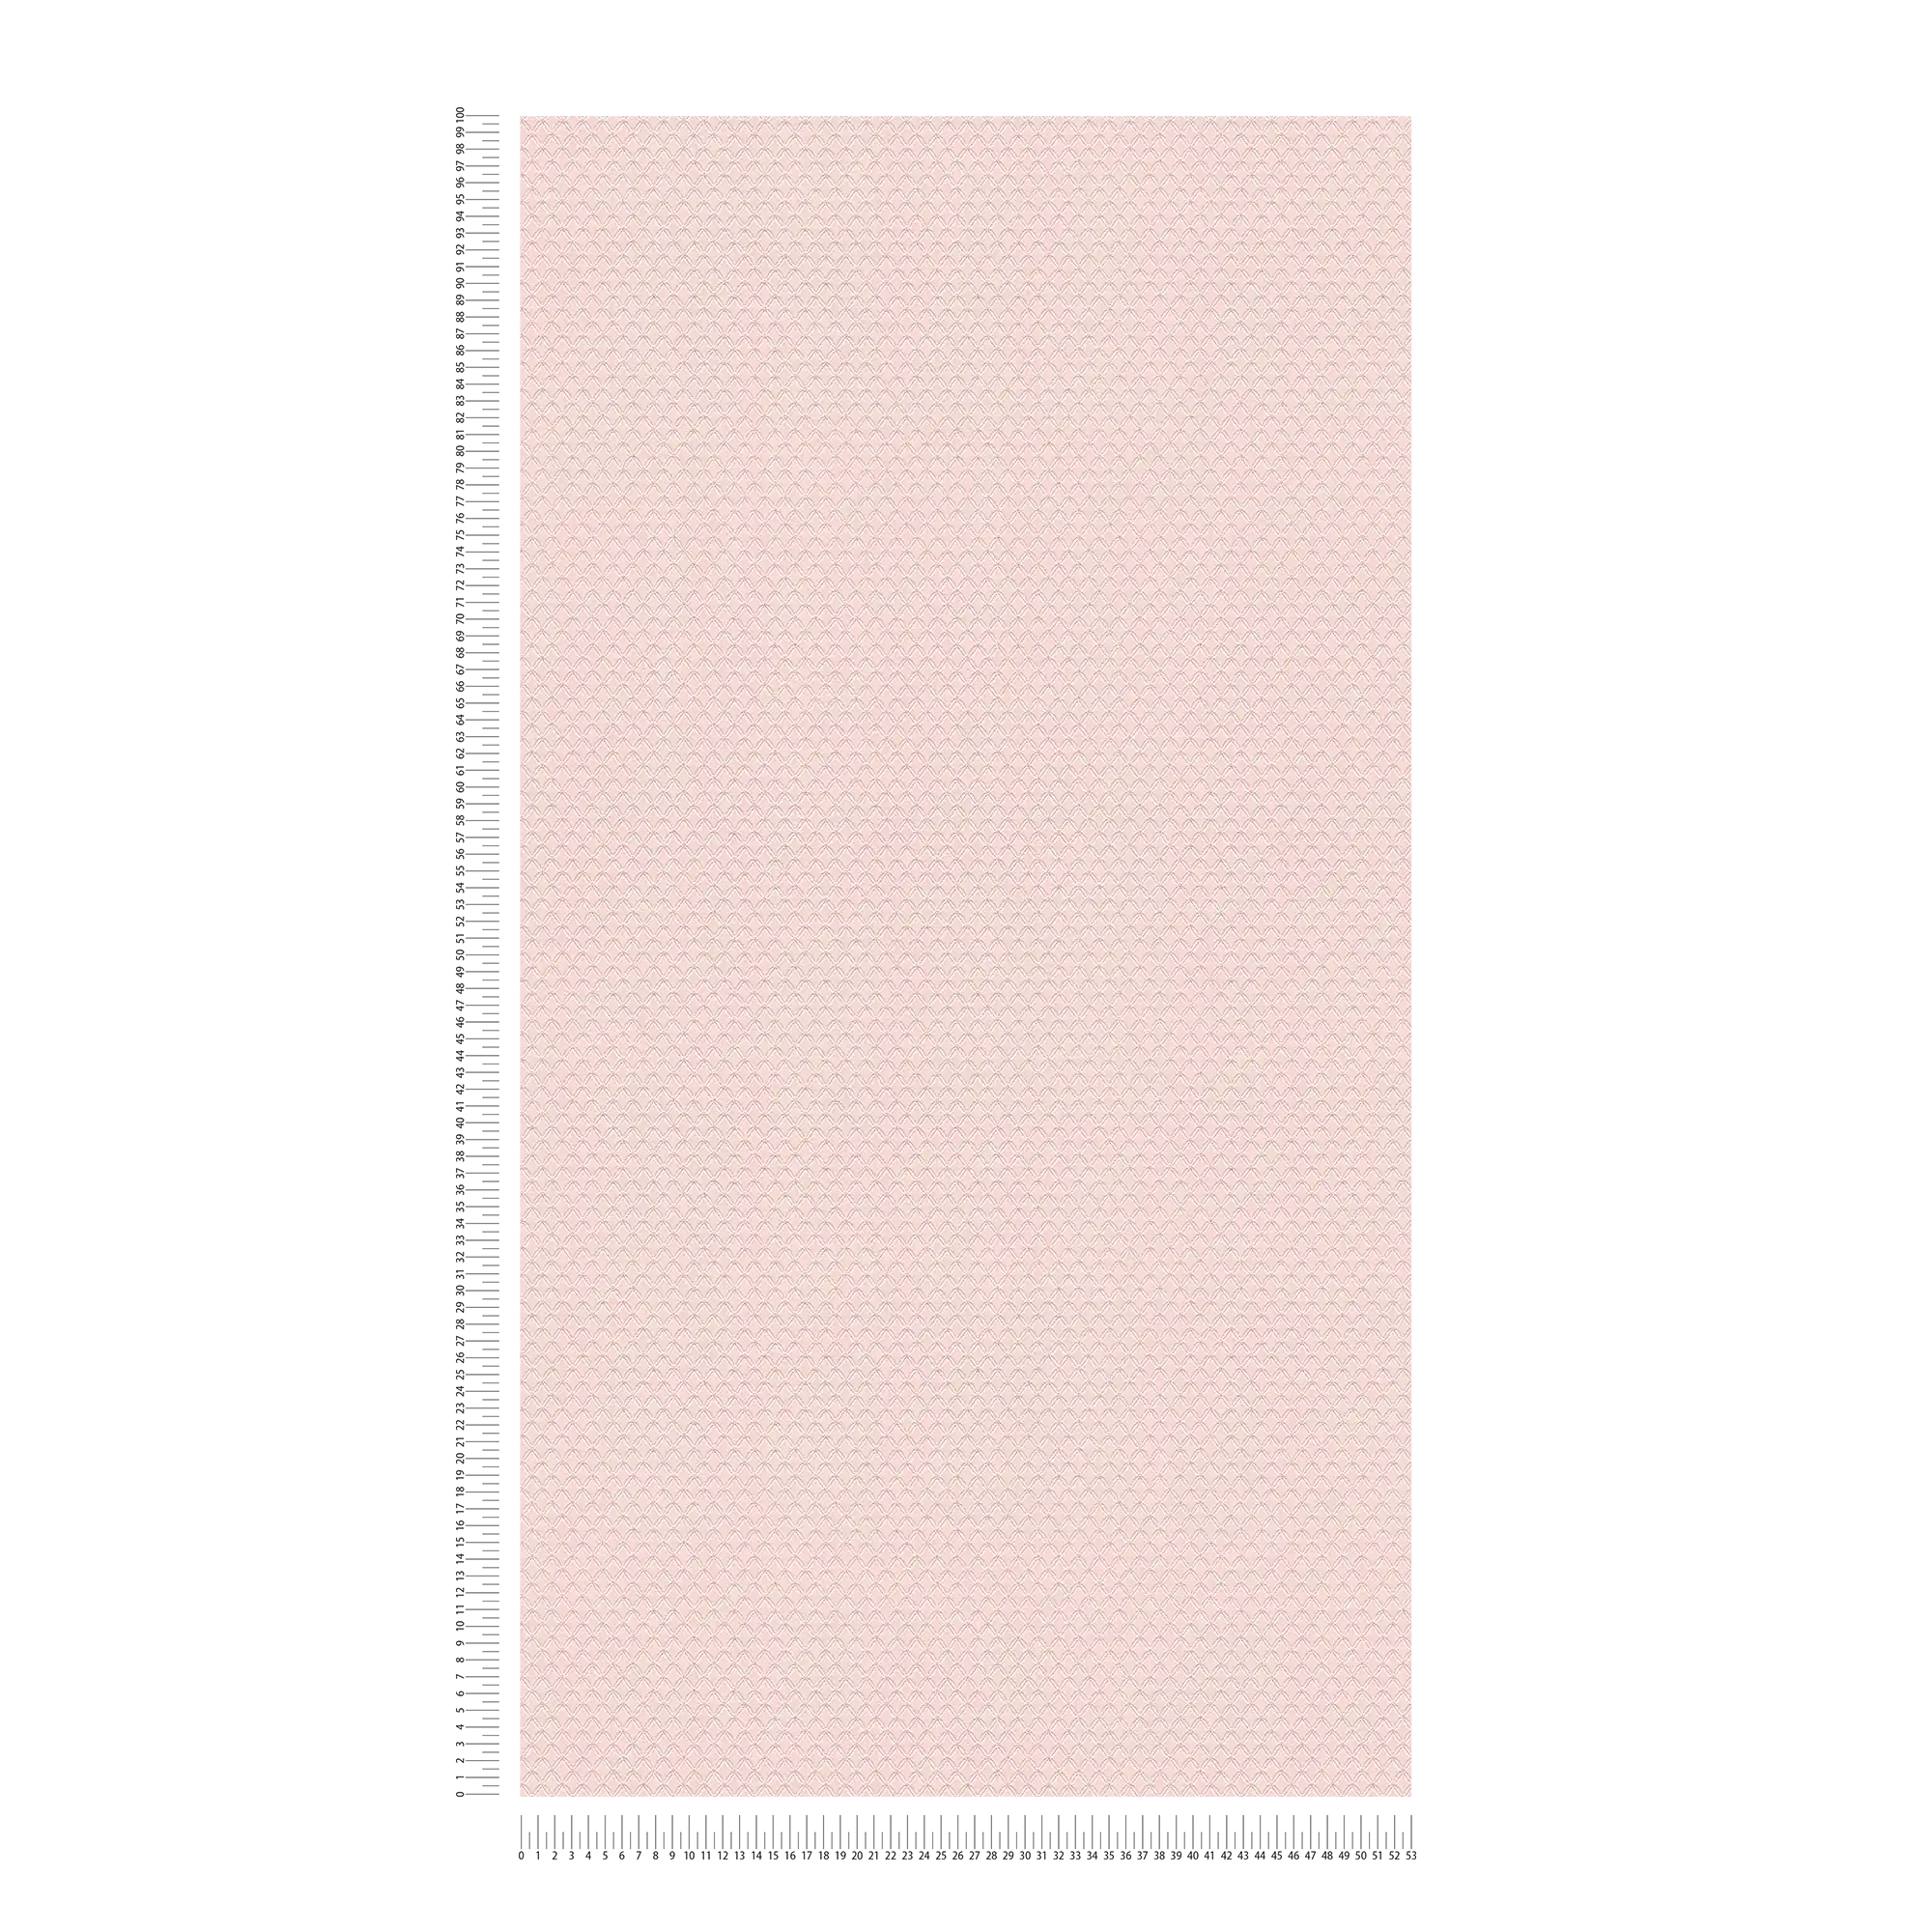             Carta da parati glitterata con struttura a rombi leggeri - rosa, viola
        